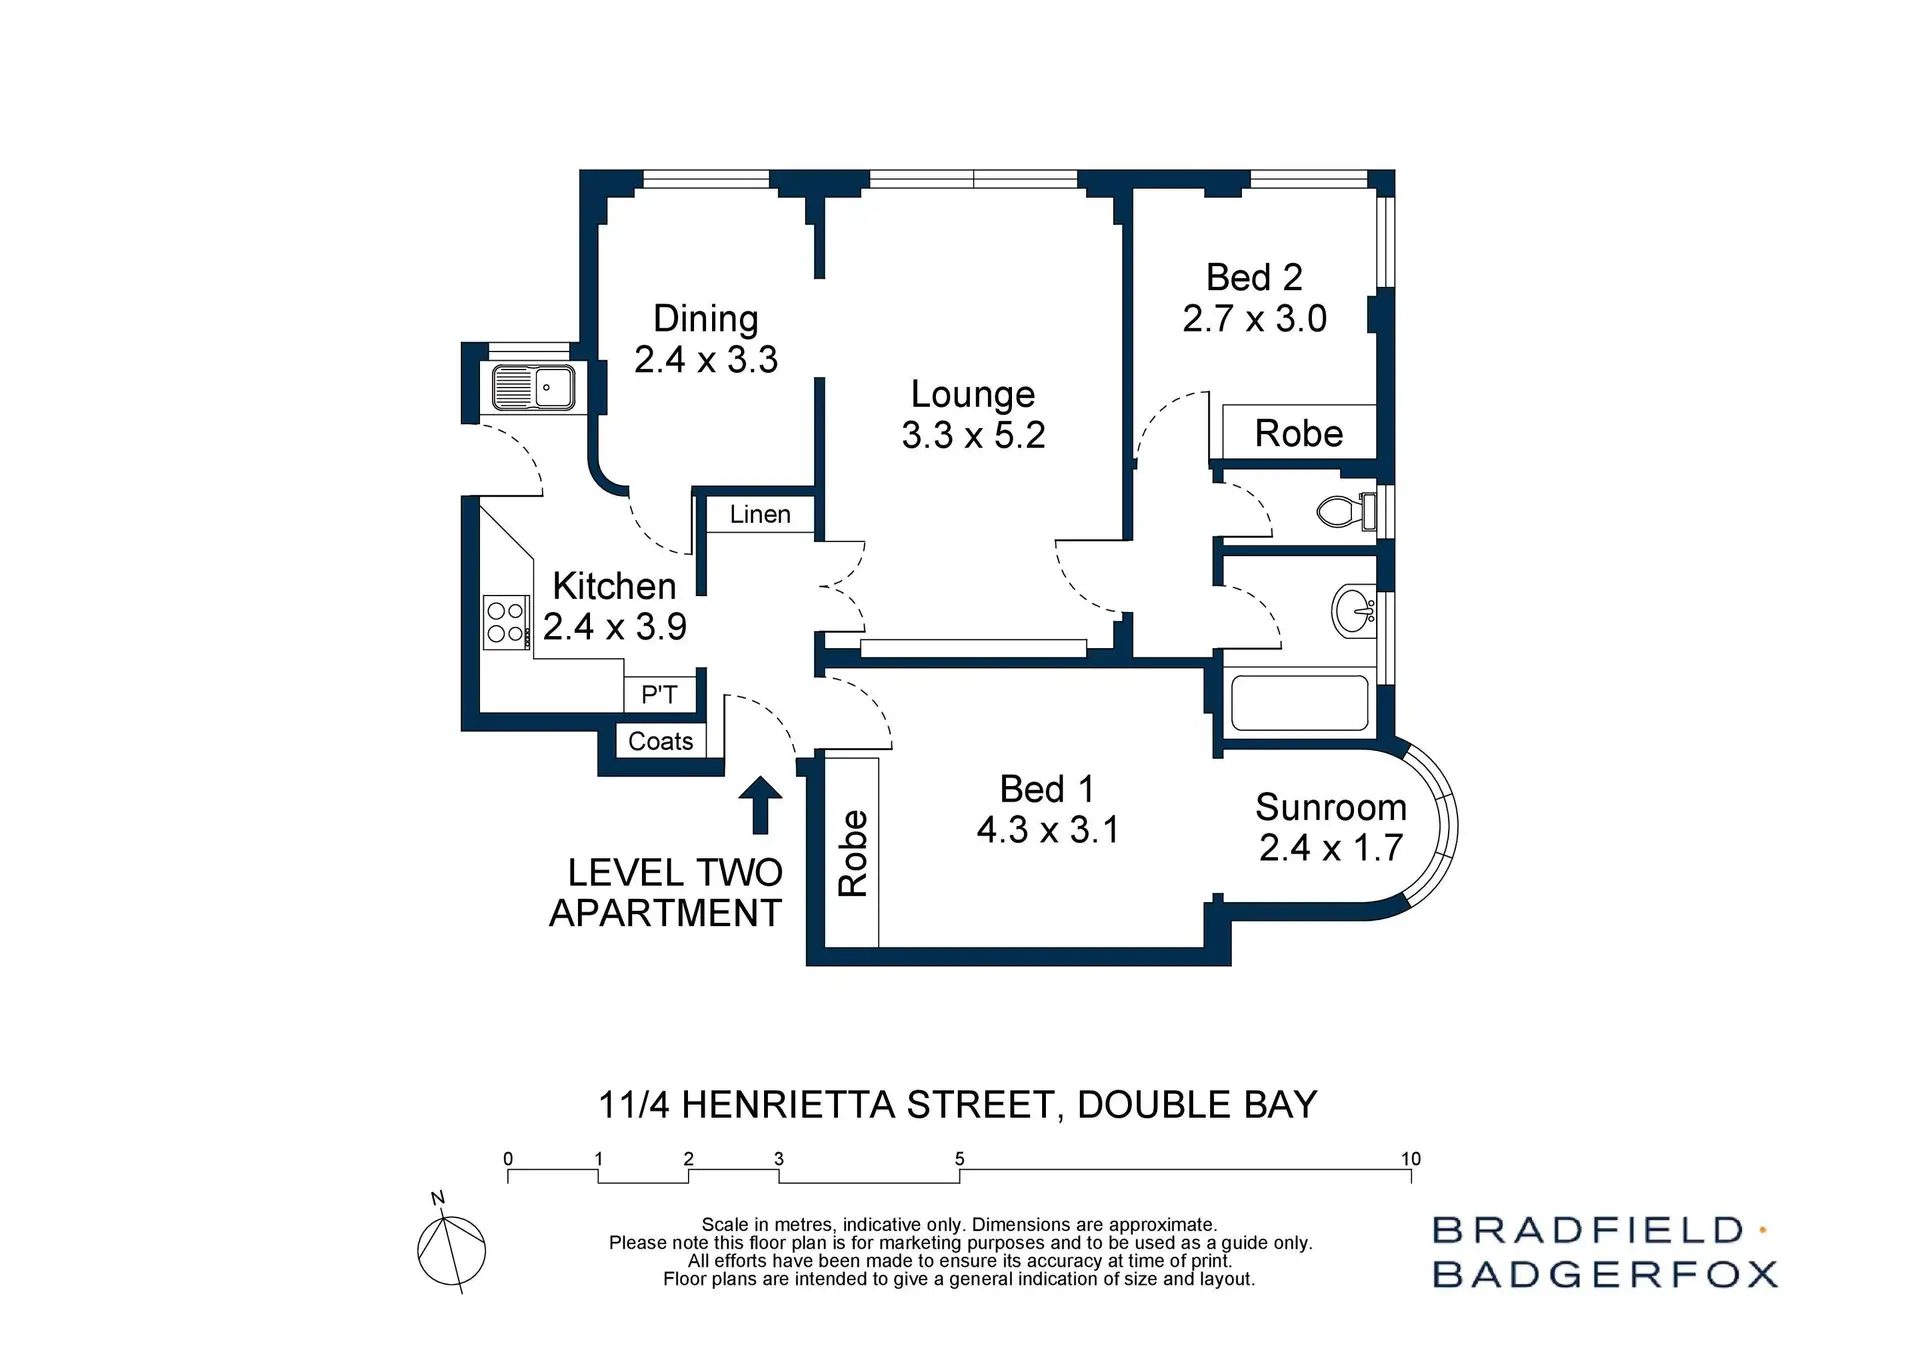 11/4 Henrietta Street, Double Bay Sold by Bradfield Badgerfox - image 1